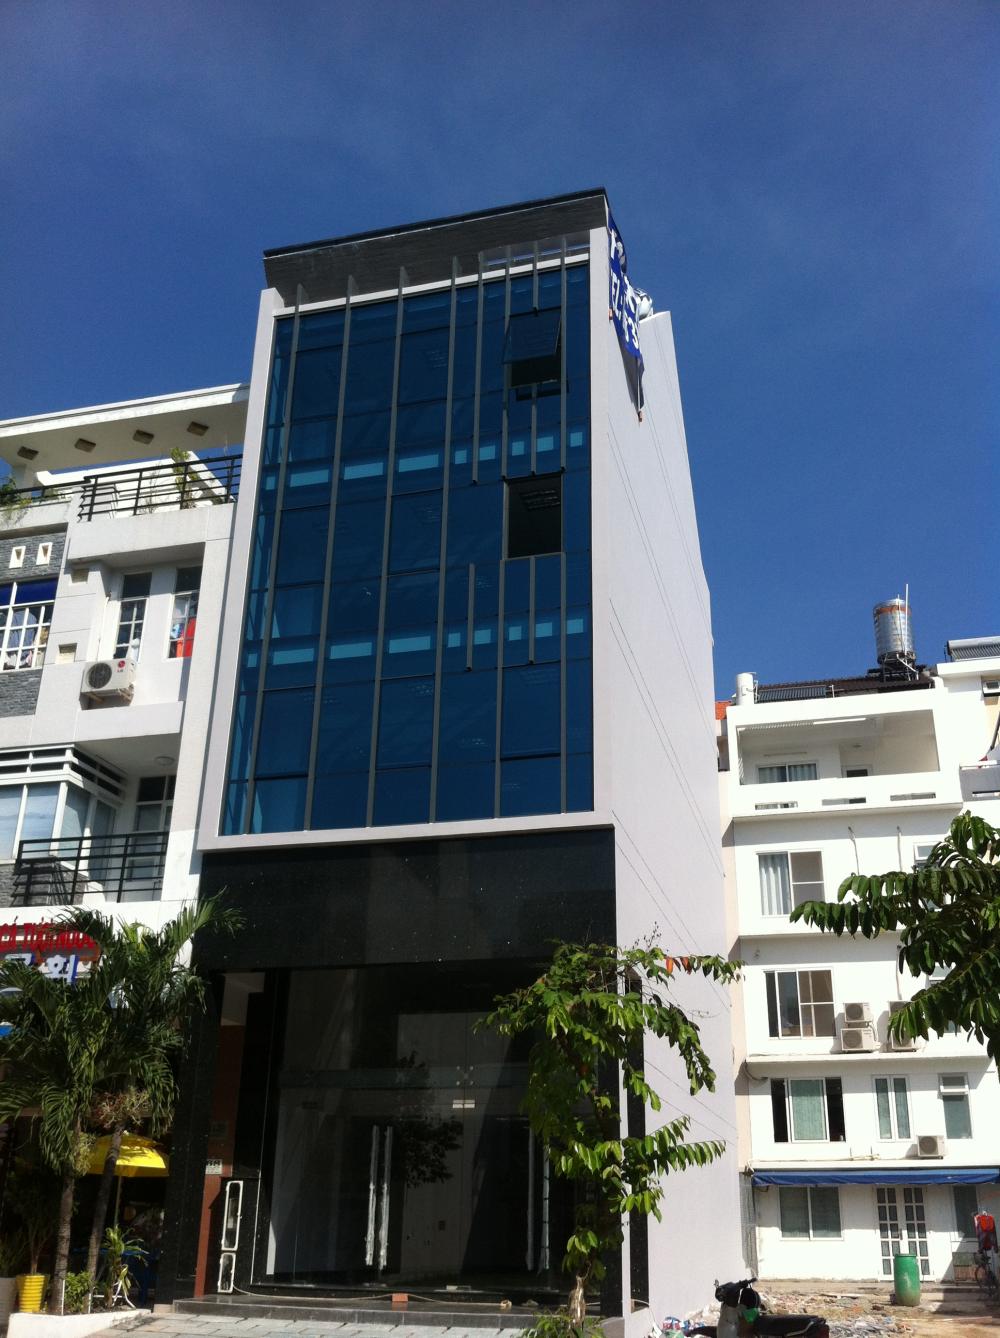 Cho thuê nhà phố kinh doanh, Phú Mỹ Hưng, giá 35 triệu/ tháng, DTSD: 500 m2